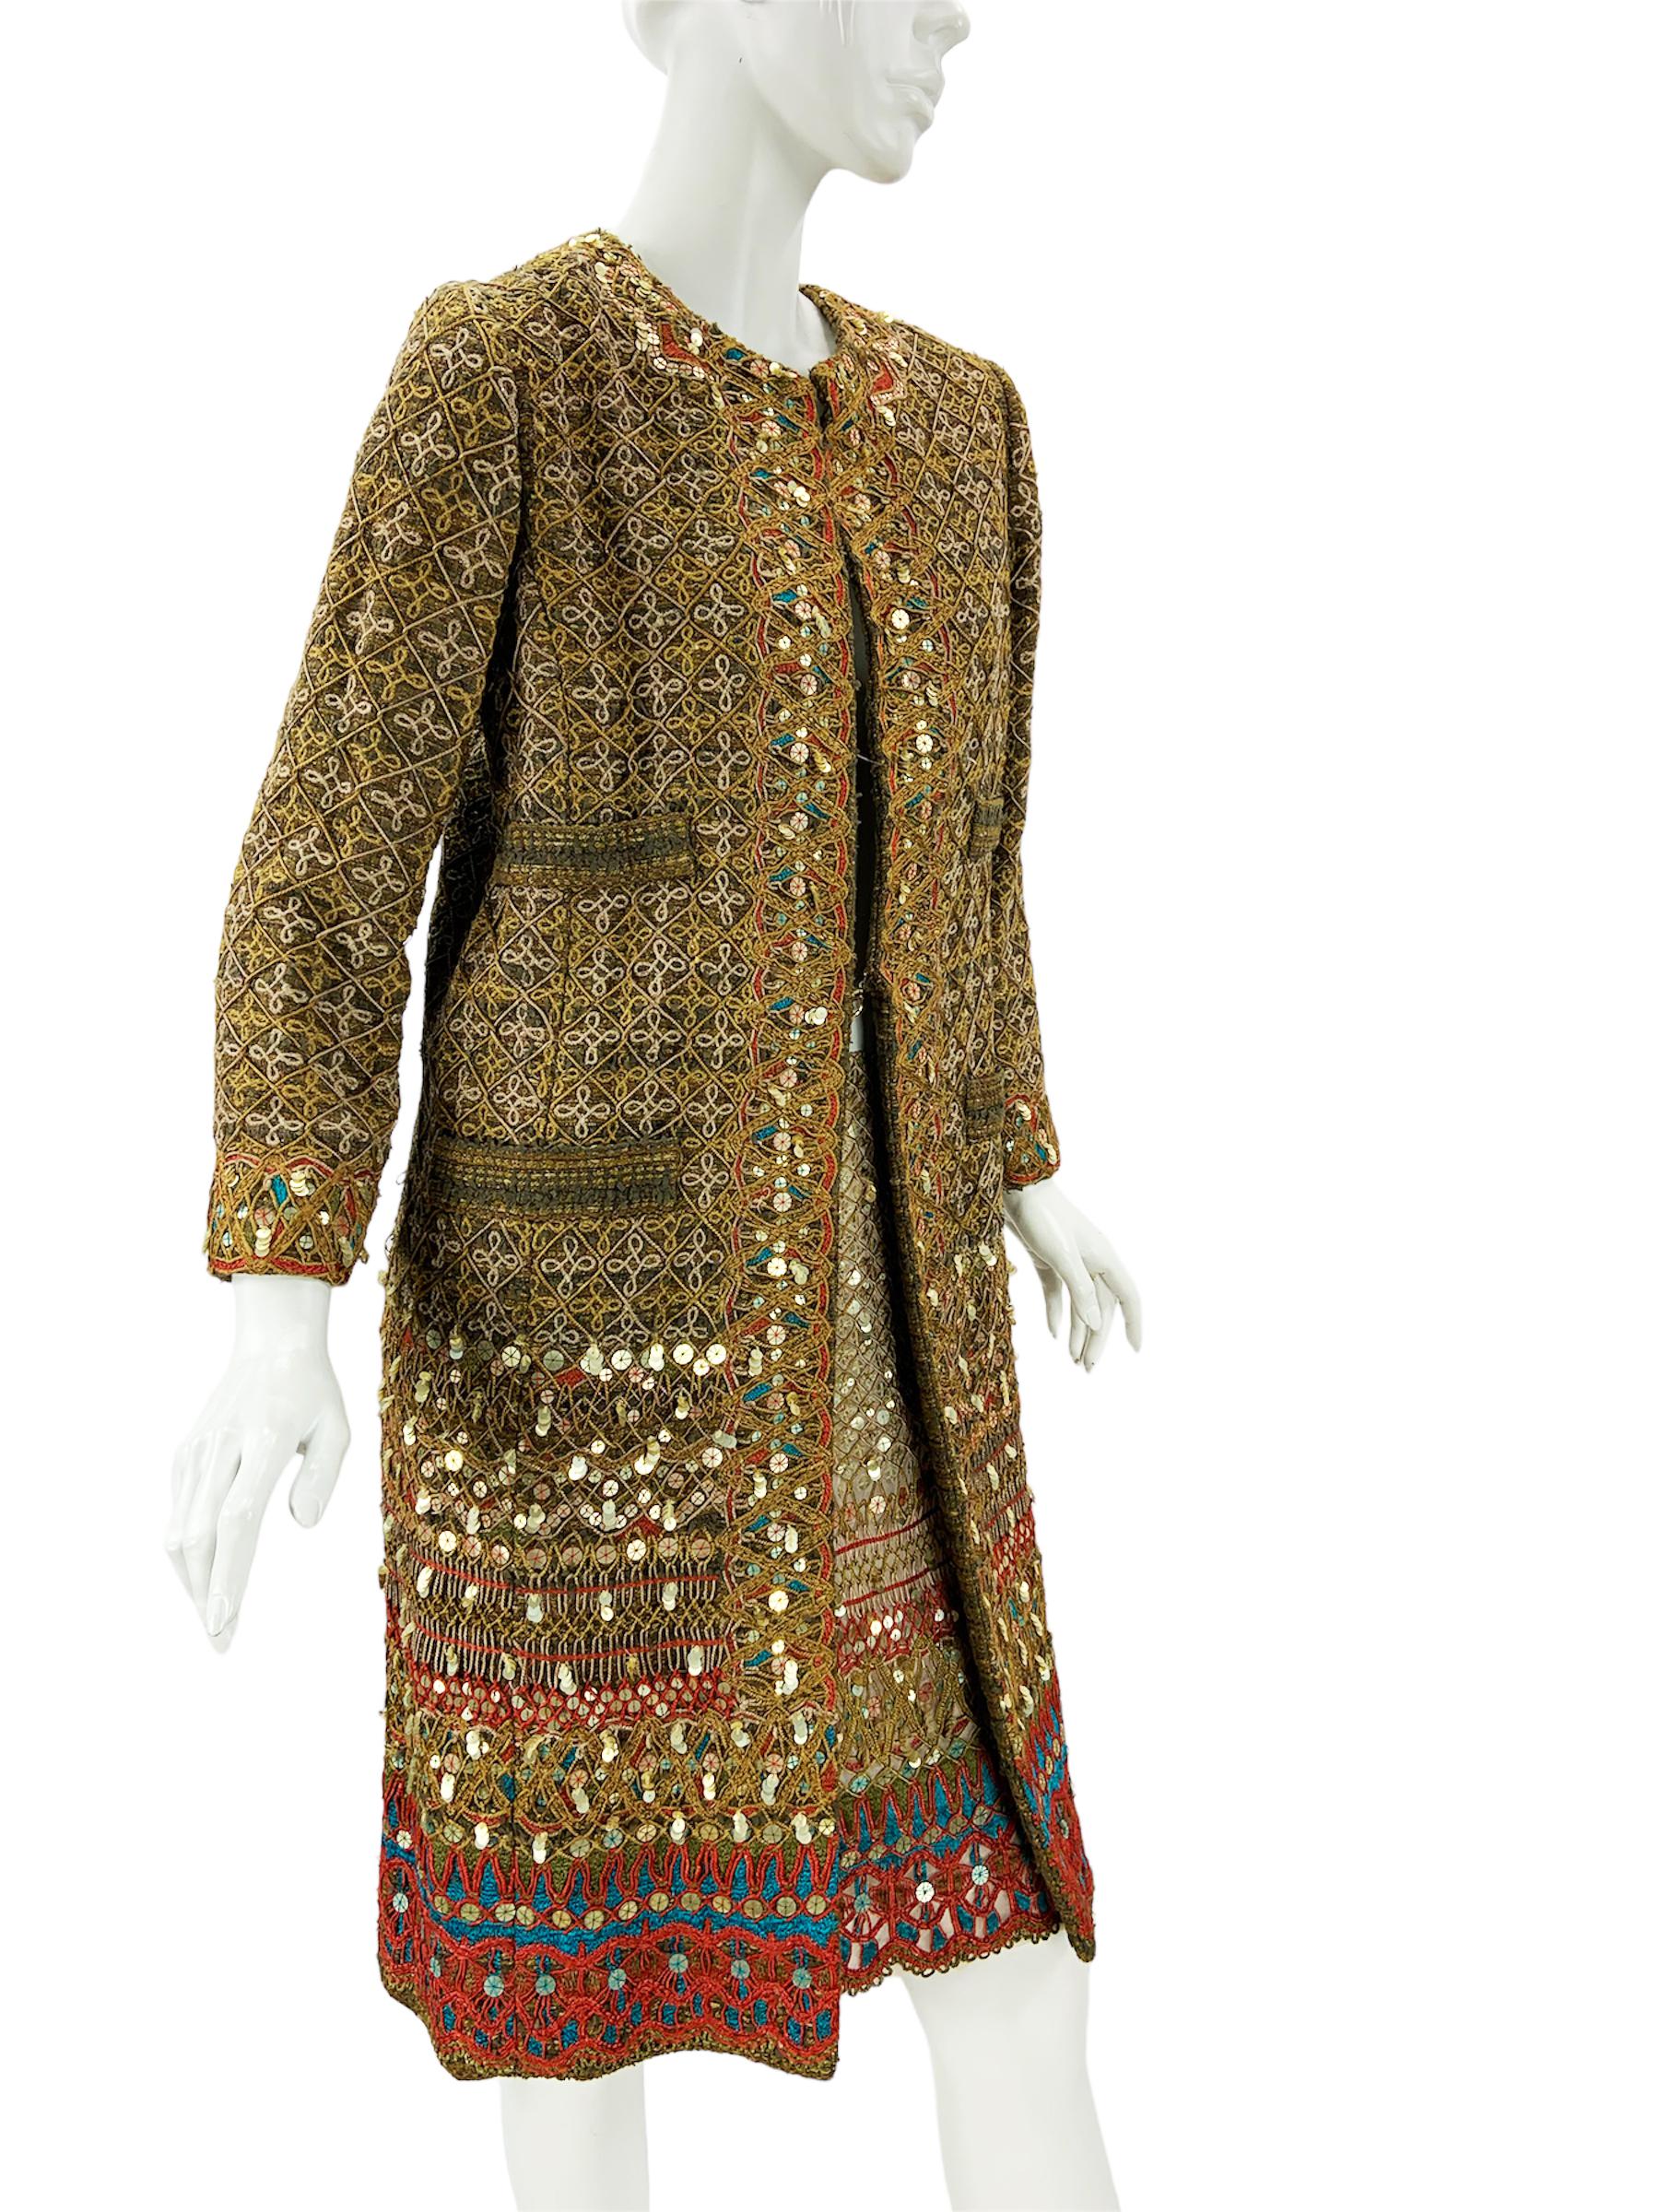 Women's Vintage Oscar de la Renta S/S 2010 Runway Embellished Coat + Matching Skirt US 6 For Sale